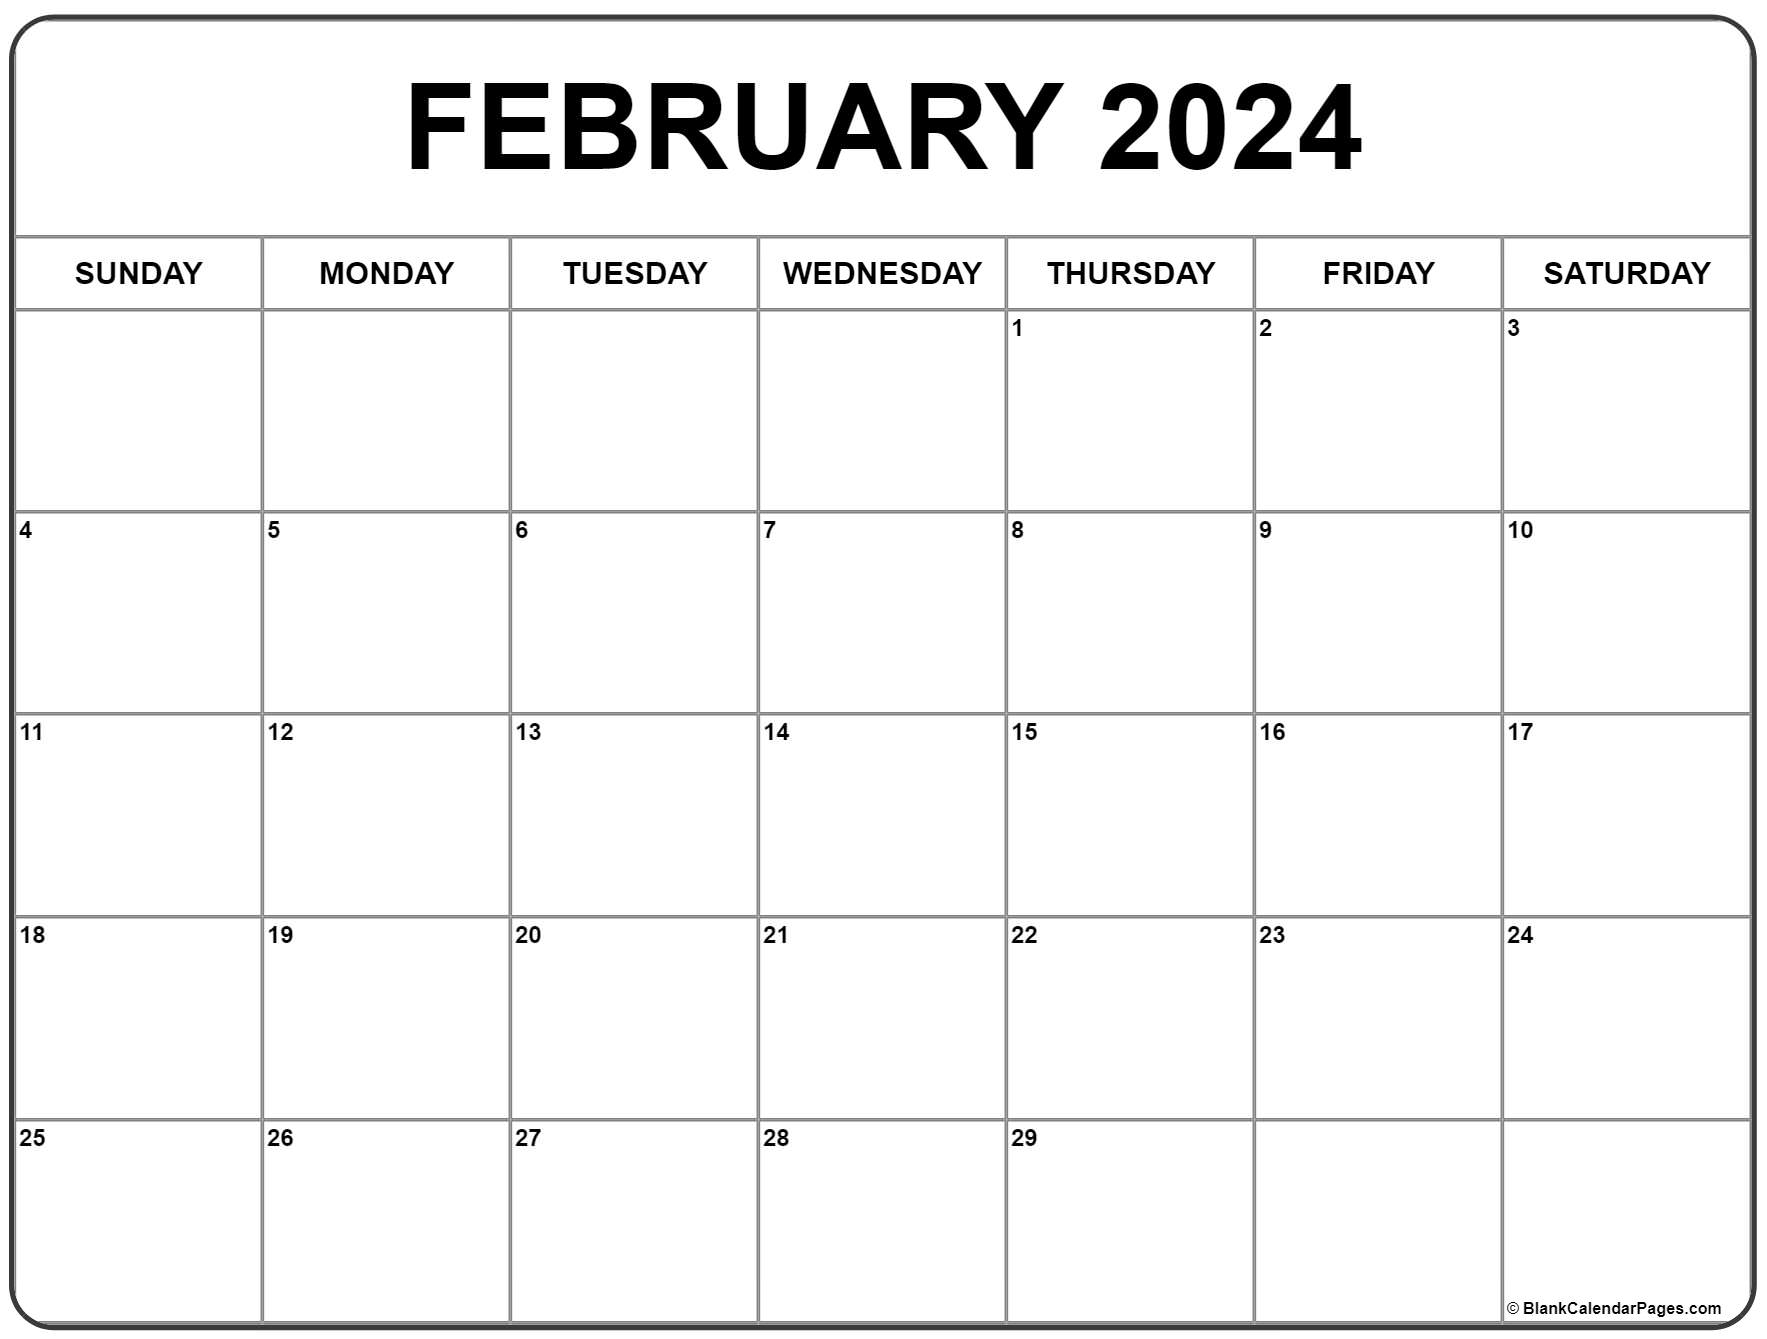 February 2024 Calendar | Free Printable Calendar for Printable Calendar 2024 Feb